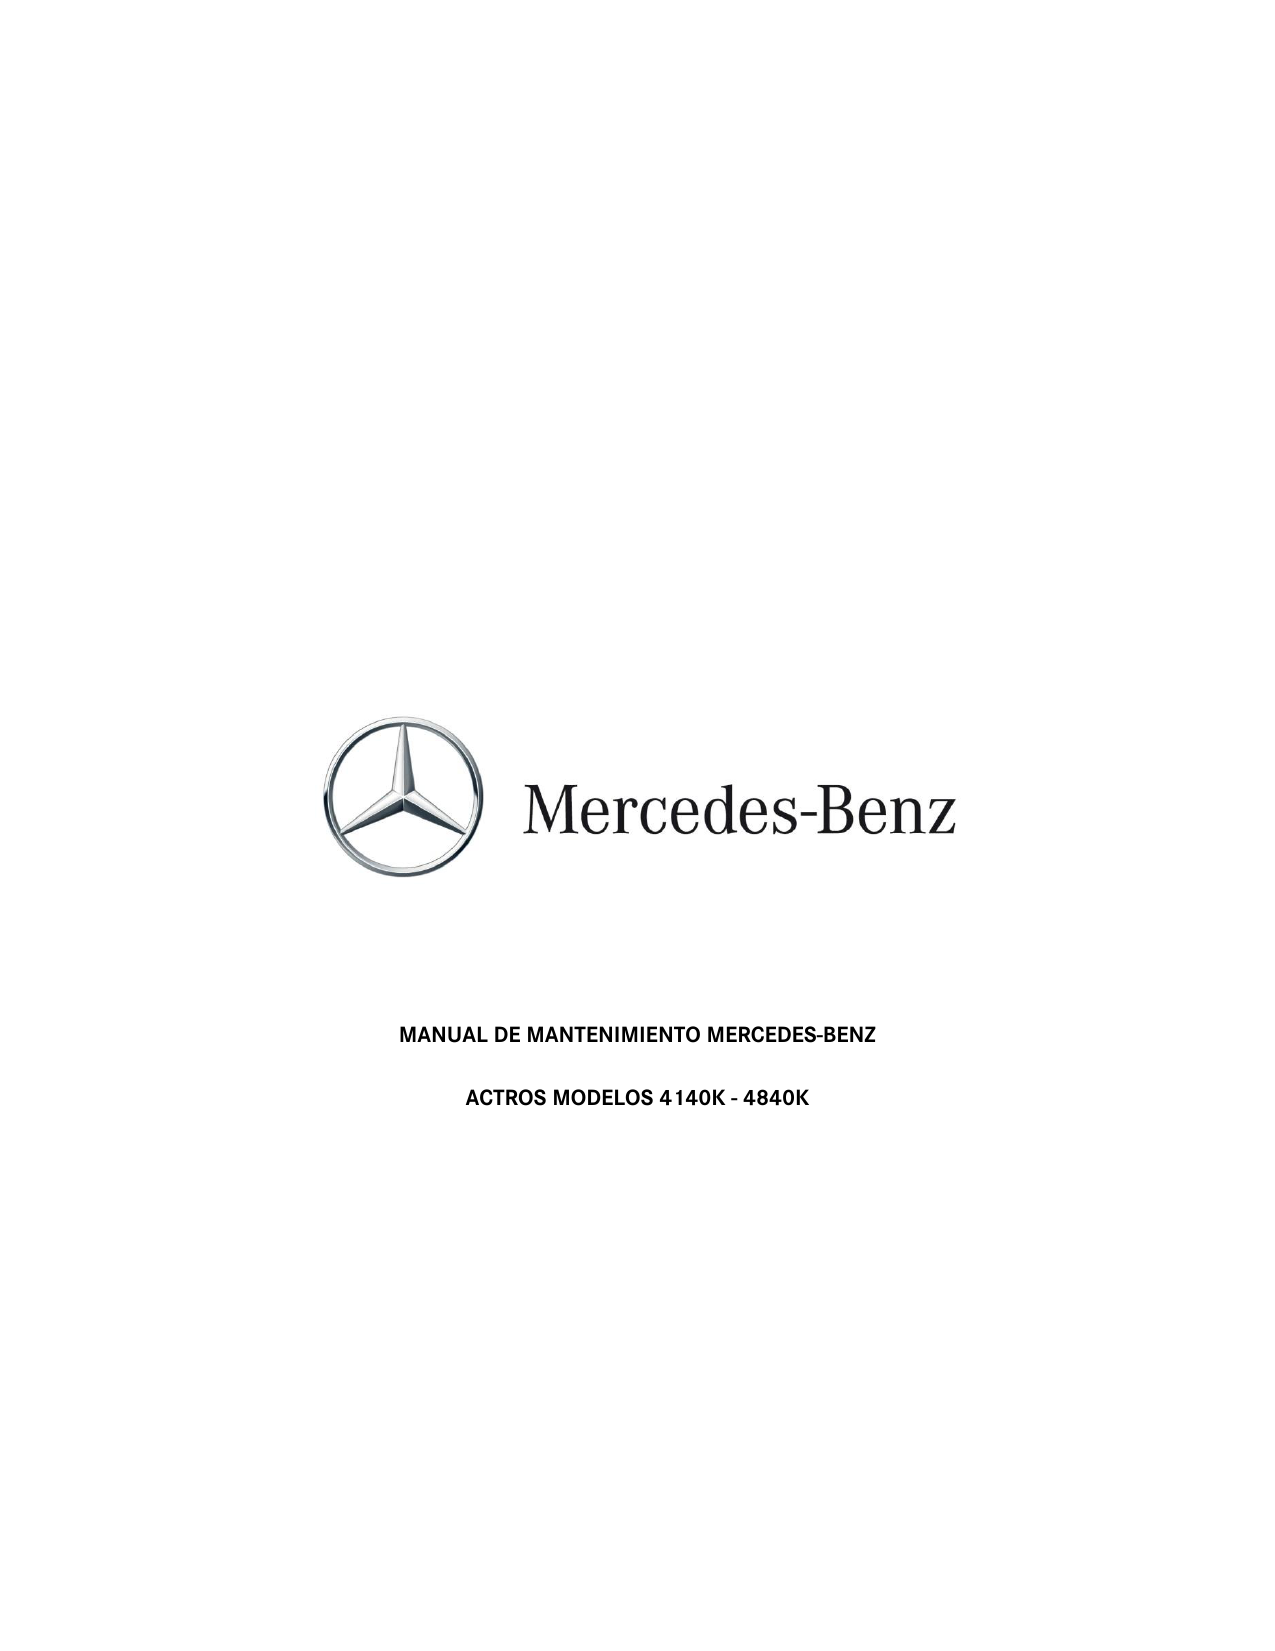 o309 B manual de instrucciones de 1982 mantenimiento y cuidados Mercedes Benz l410 